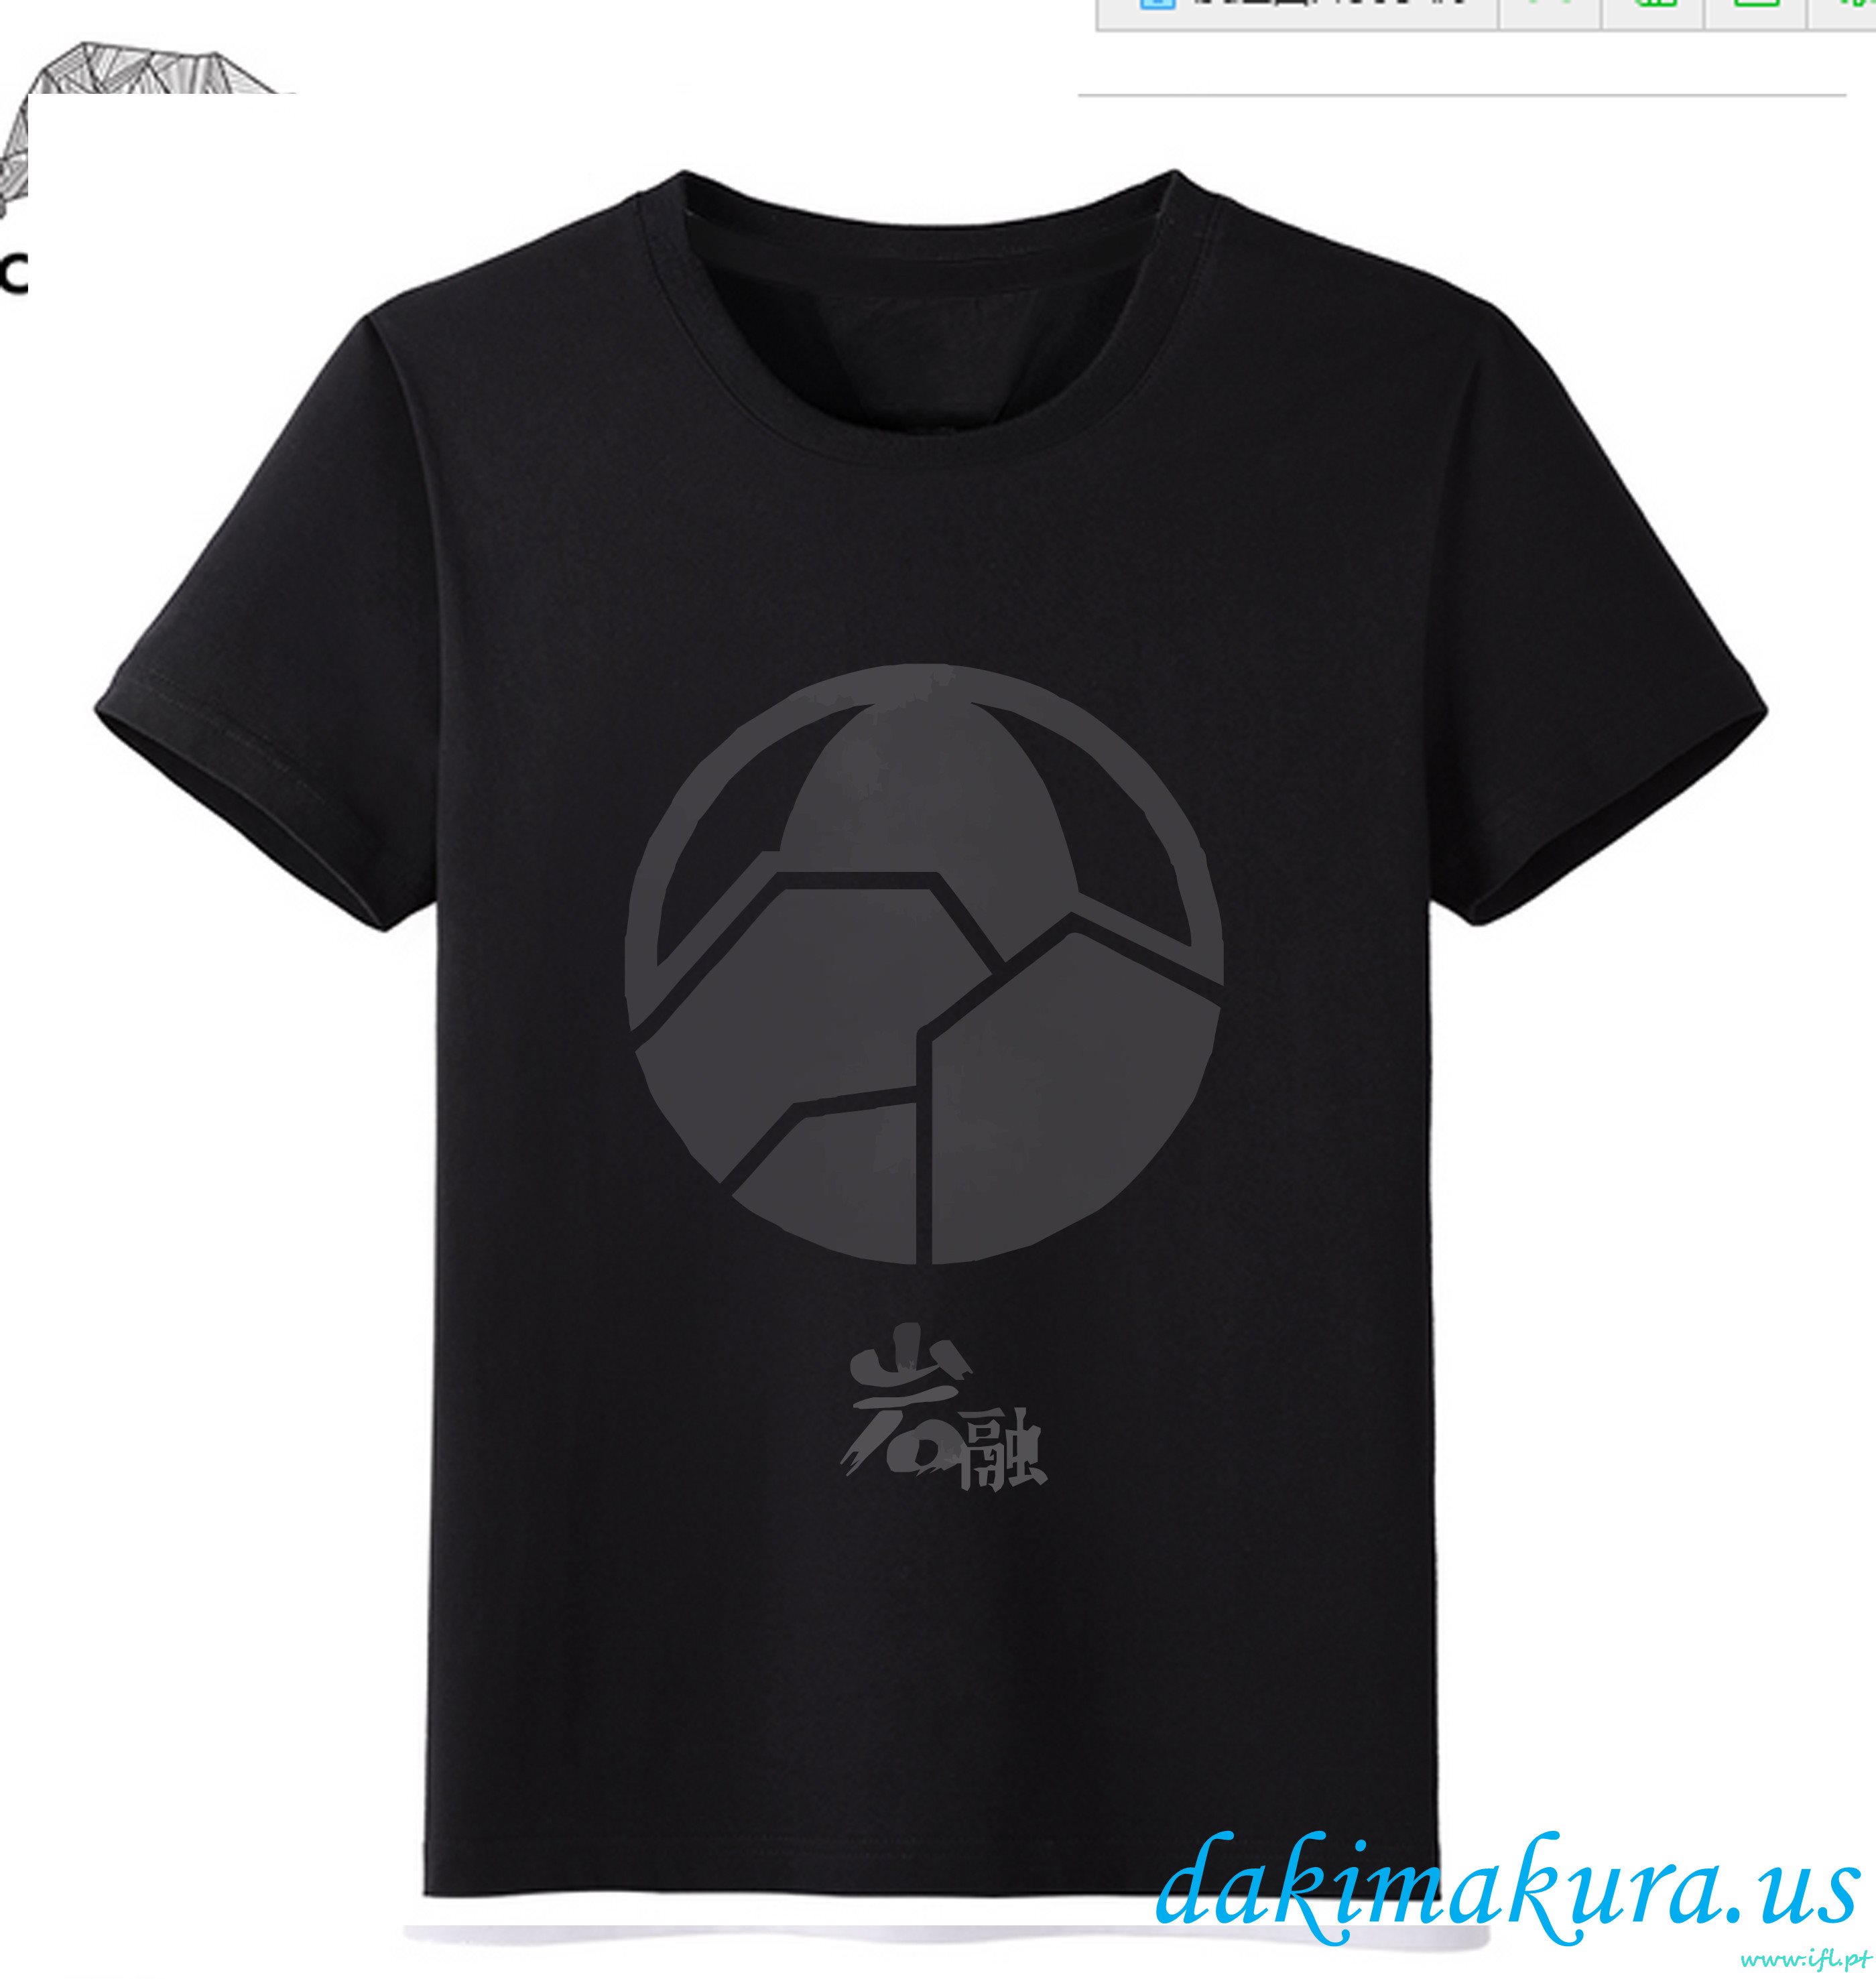 дешевый черный - Touken Ranbu онлайн мужчина аниме мода футболки от фарфоровой фабрики